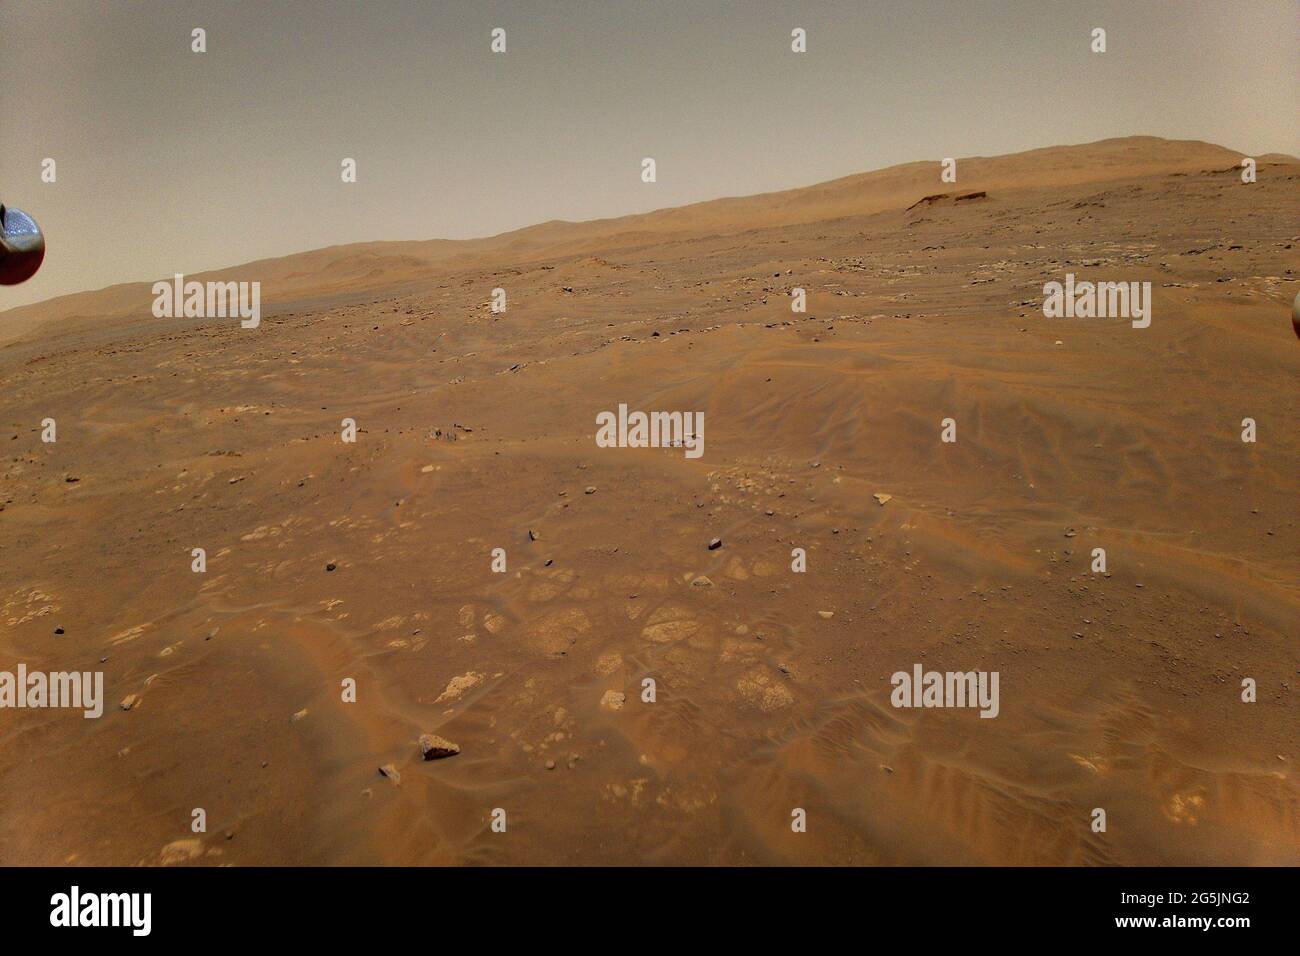 Washington, Stati Uniti. 28 Giugno 2021. Questa immagine che guarda ad ovest verso l'unità geologica di Seitah su Marte è stata presa dall'altezza di 33 piedi (10 metri) dall'elicottero Ingenuity Mars della NASA durante il suo sesto volo il 22 maggio 2021. Crediti NASA/UPI: Notizie dal vivo UPI/Alamy Foto Stock